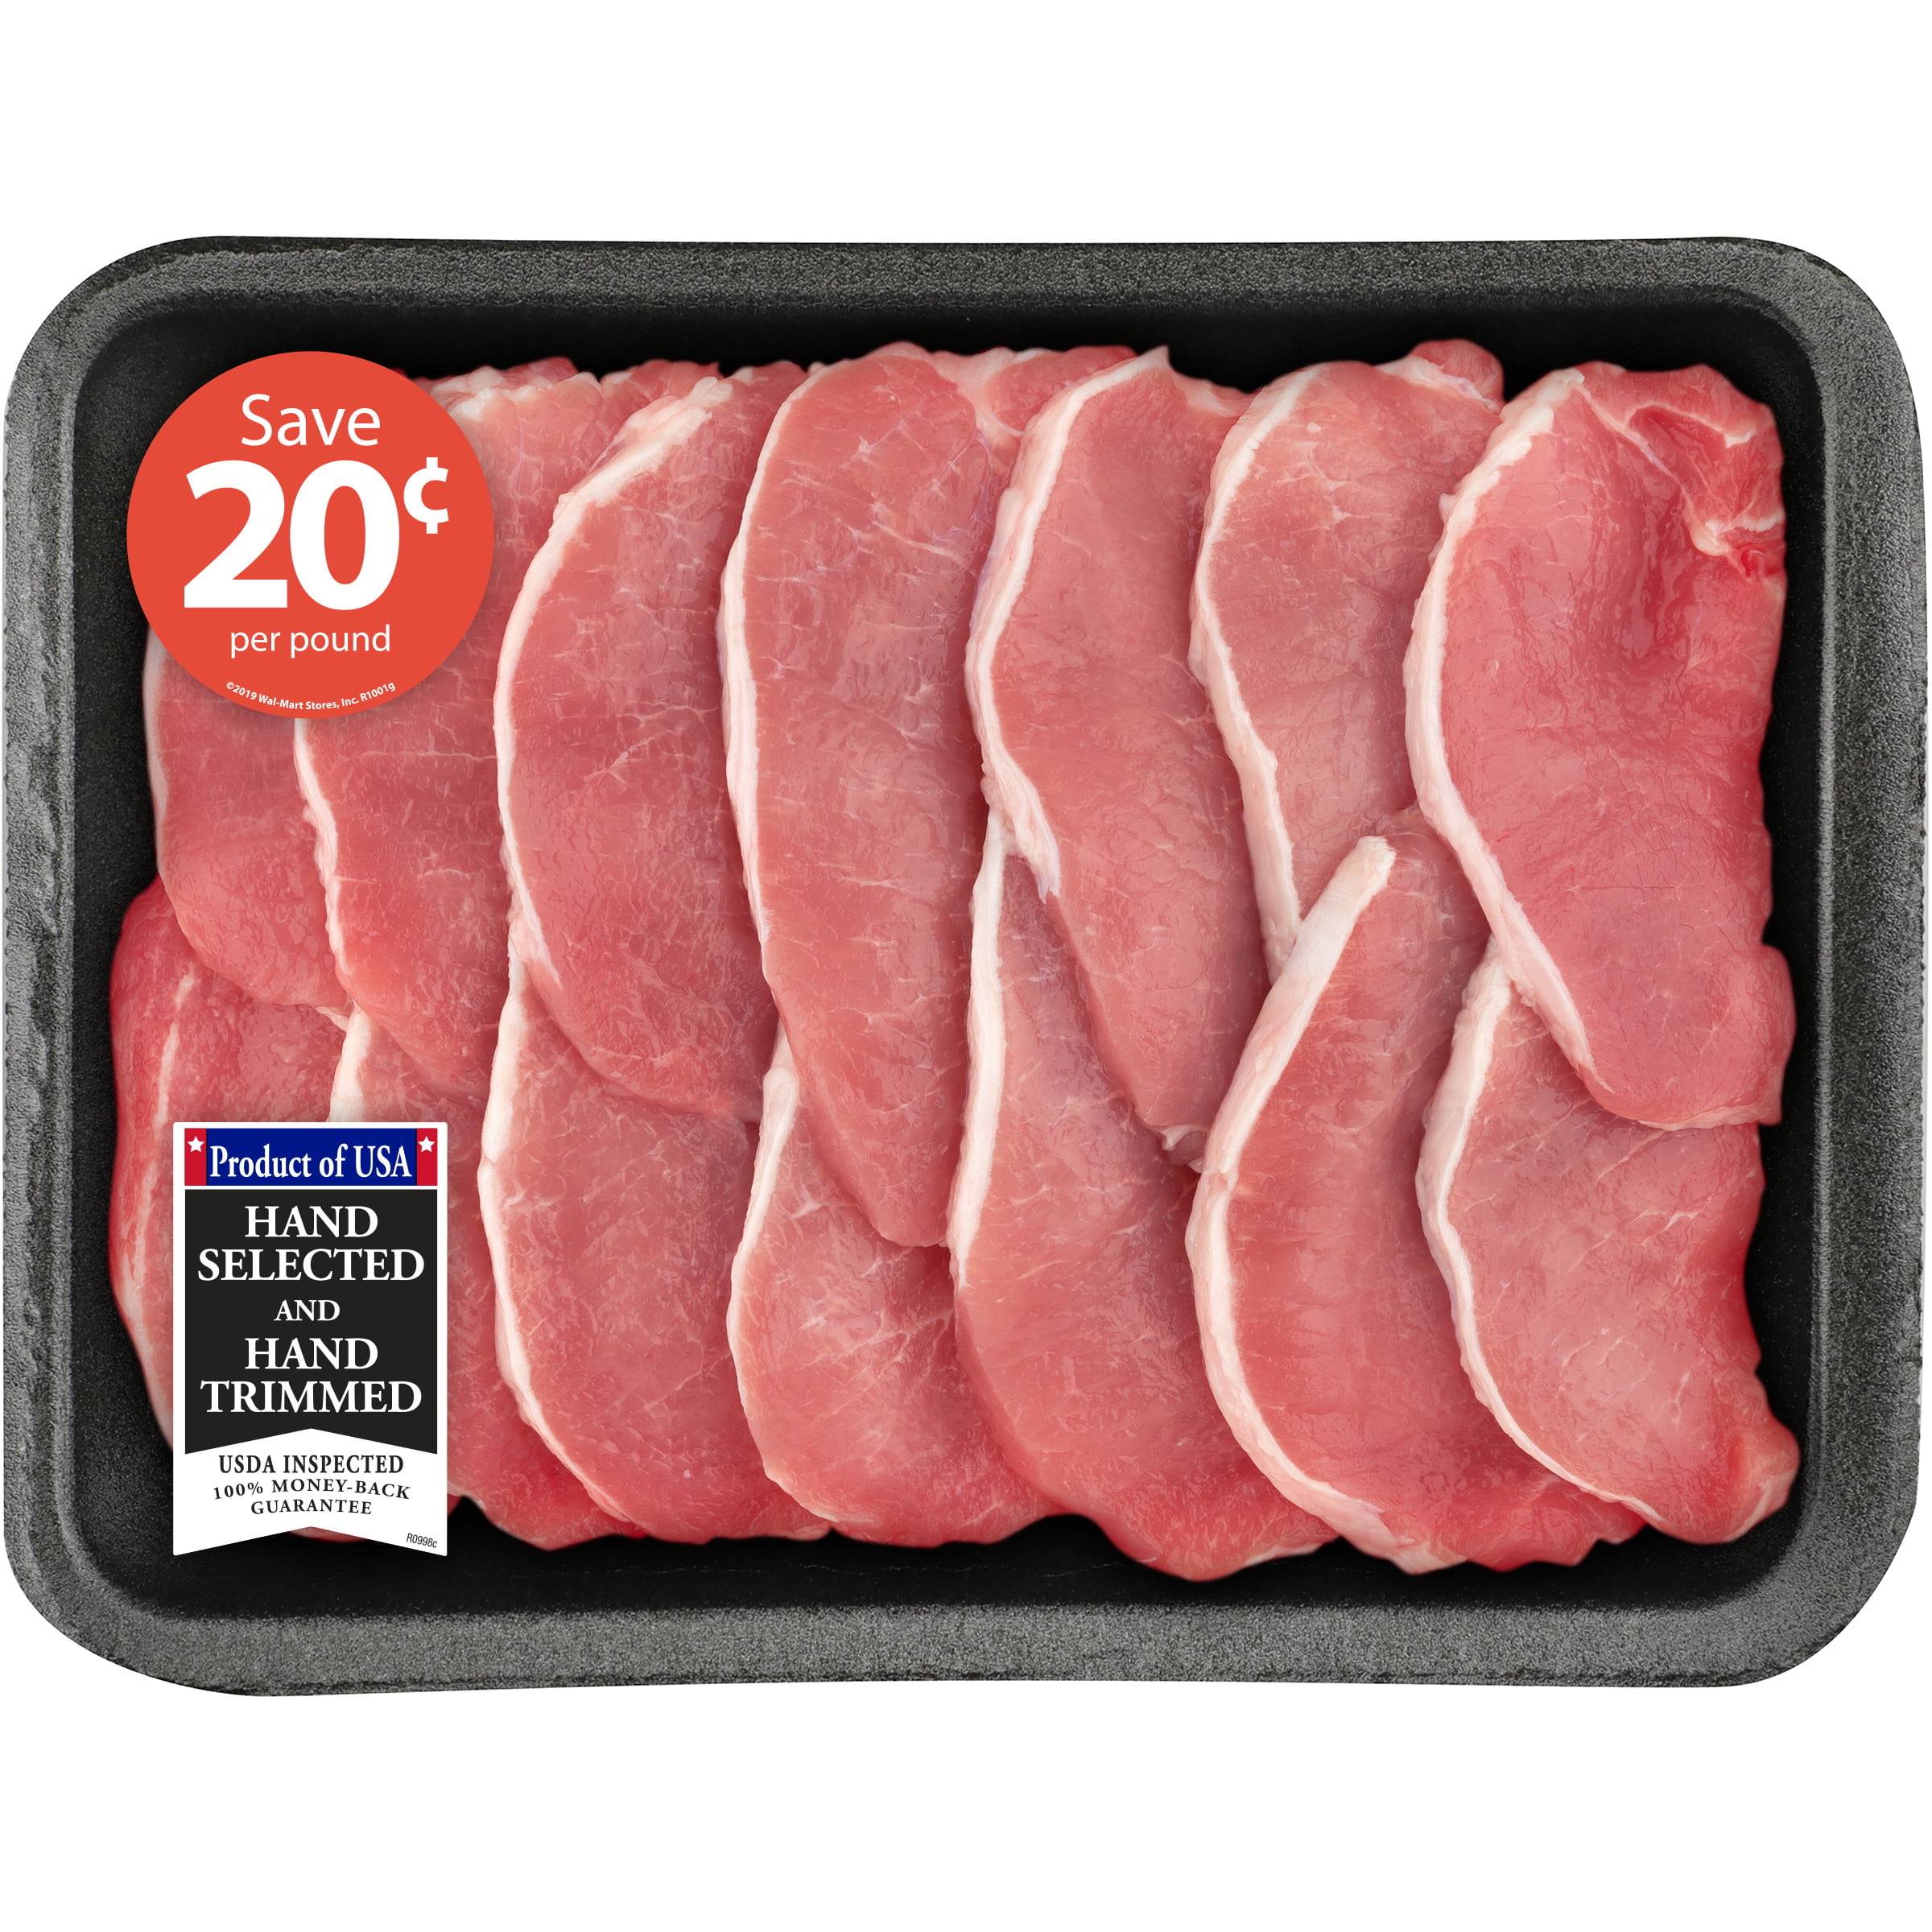 boneless center cut pork chops on grill